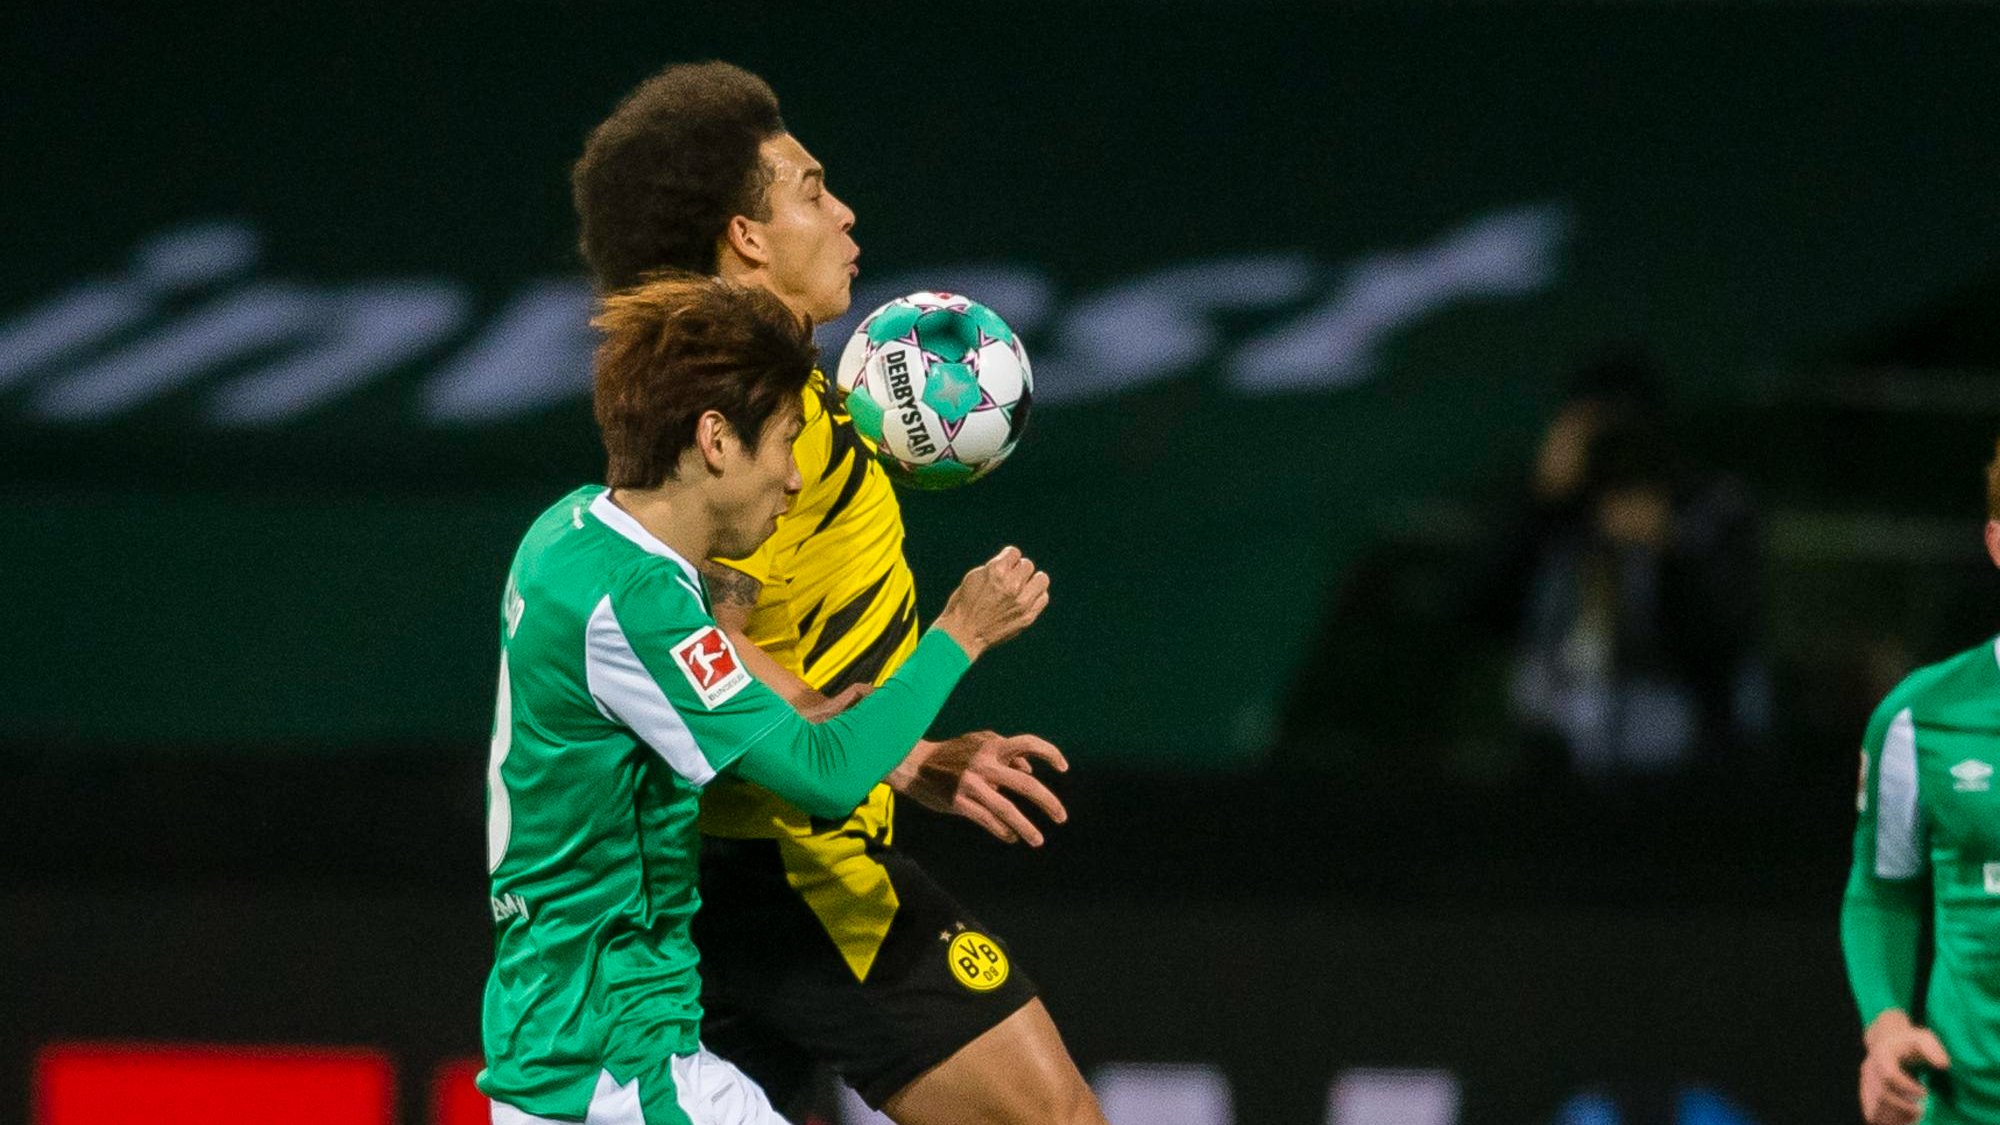 Dortmund renoue avec la victoire face au Werder Breme pour les débuts de Terzic